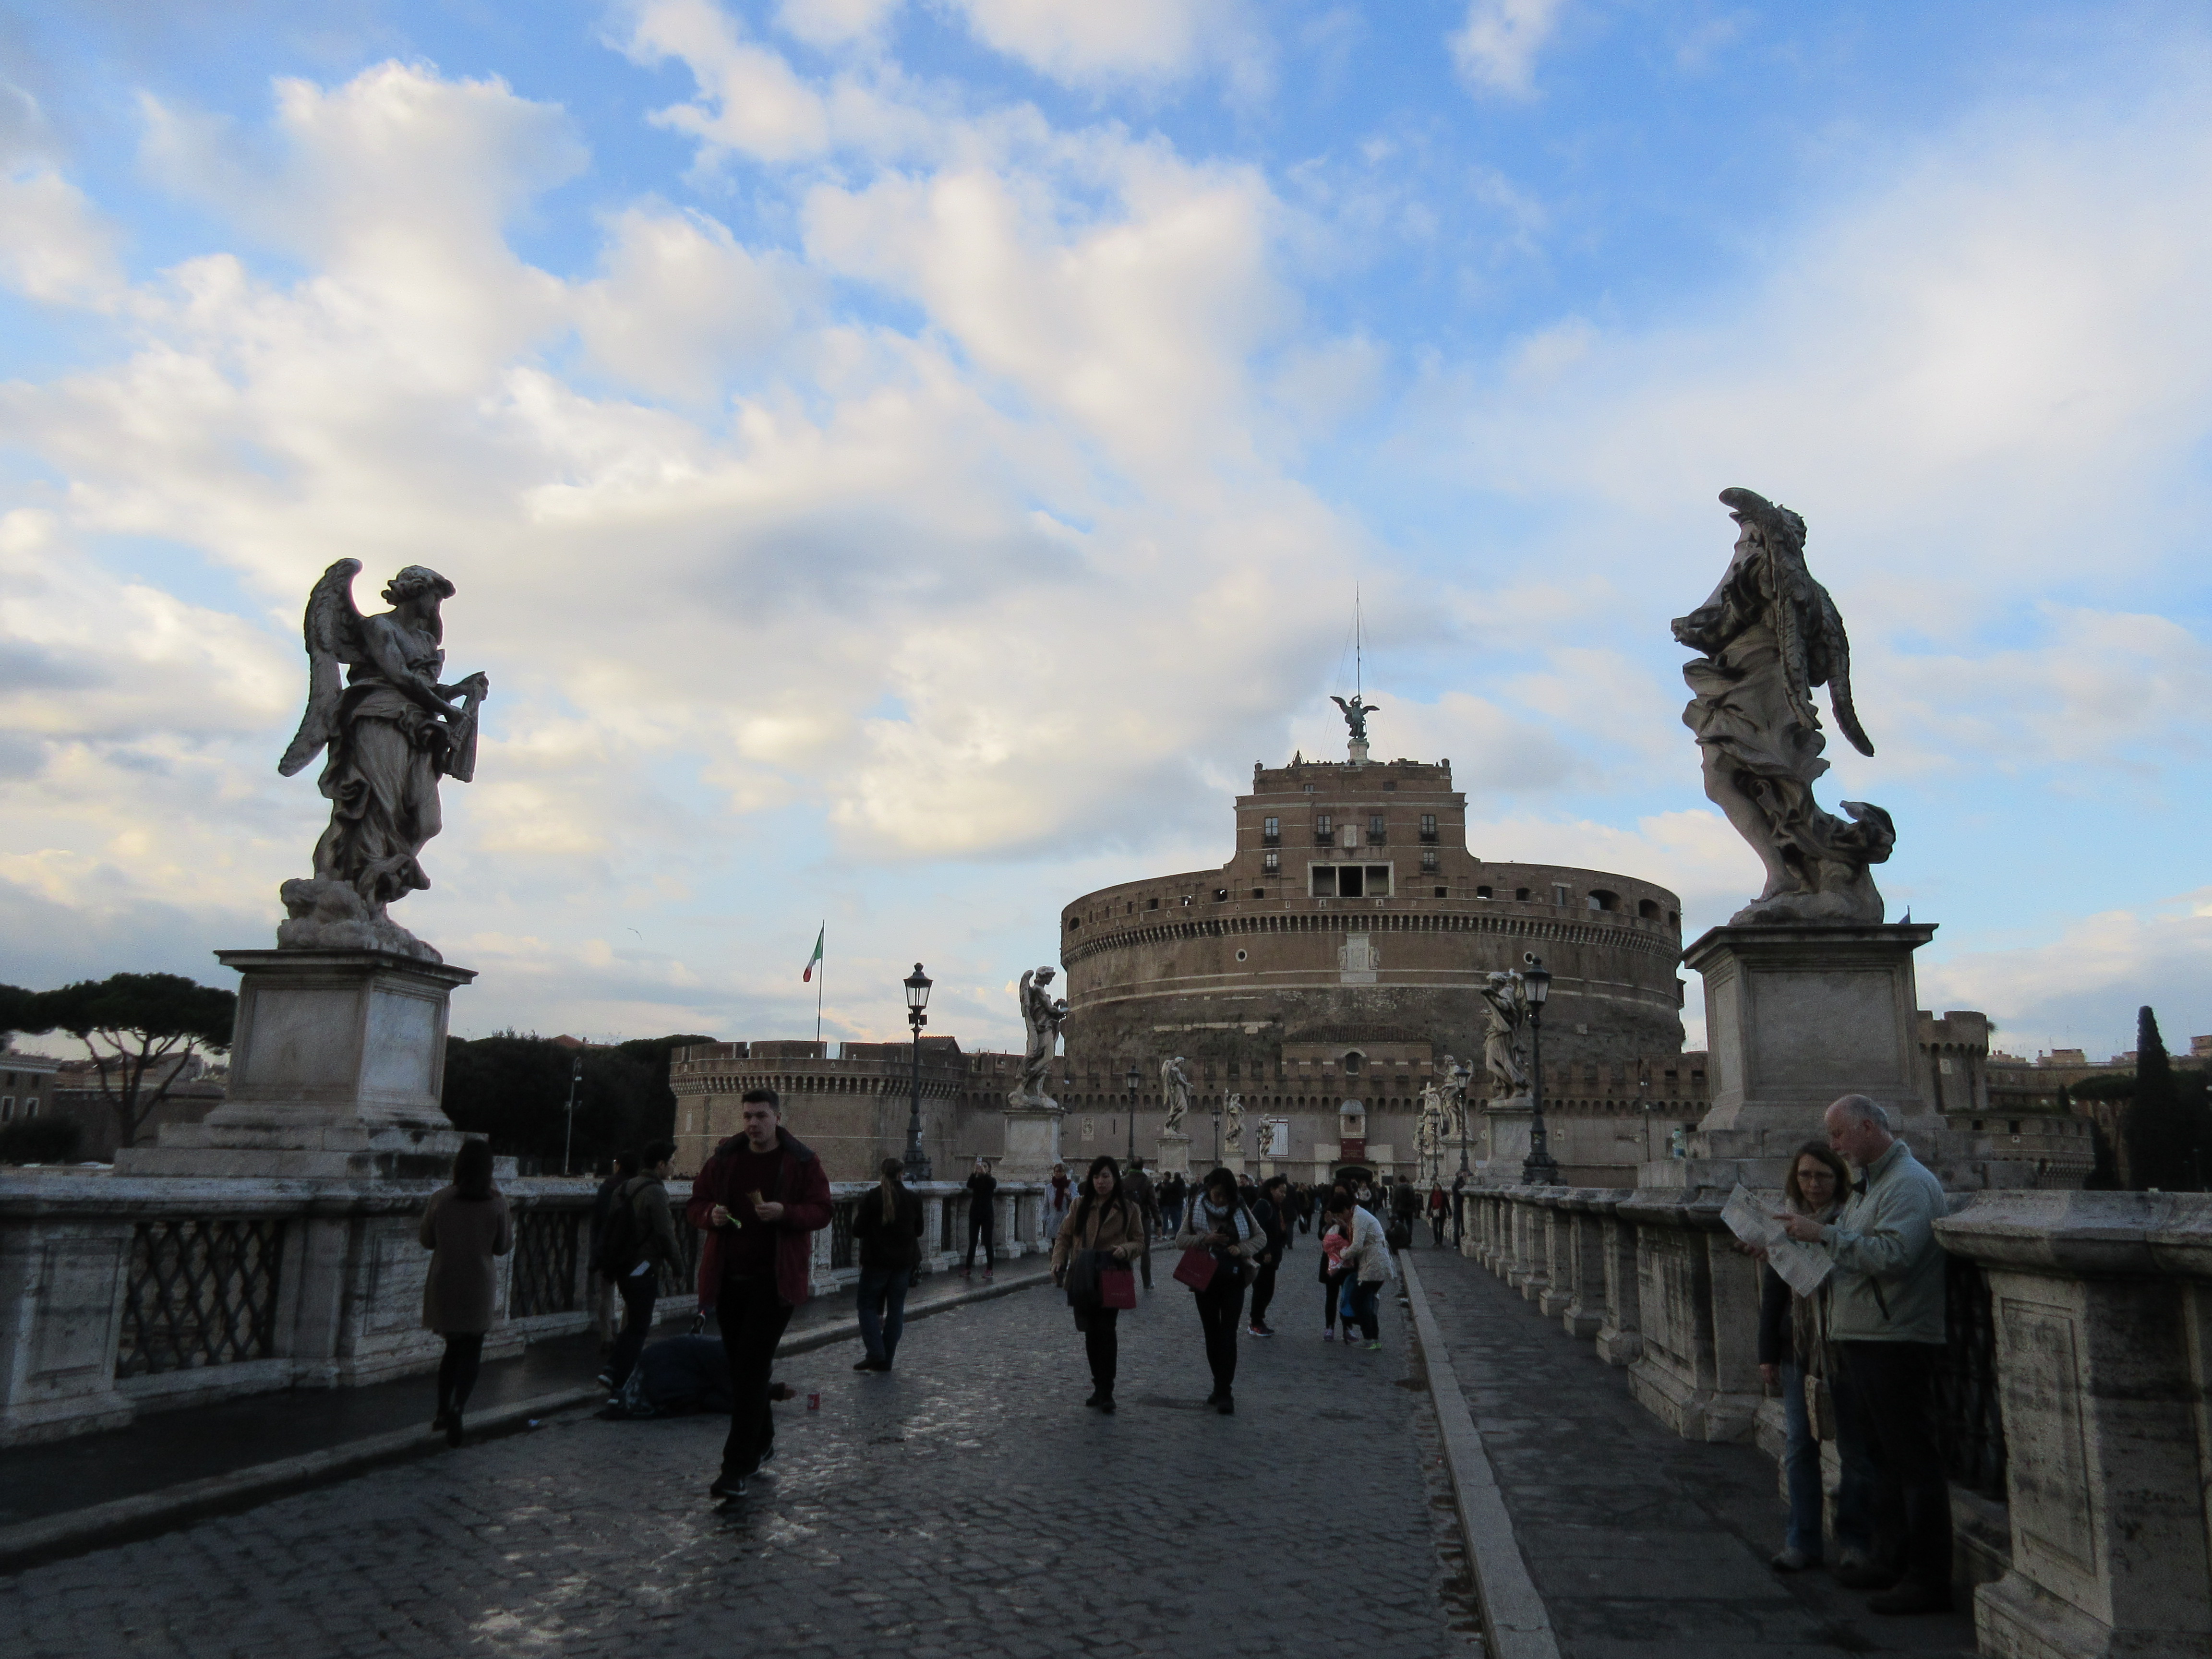 【携程攻略】罗马圣天使桥适合情侣出游旅游吗,圣天使桥情侣出游景点